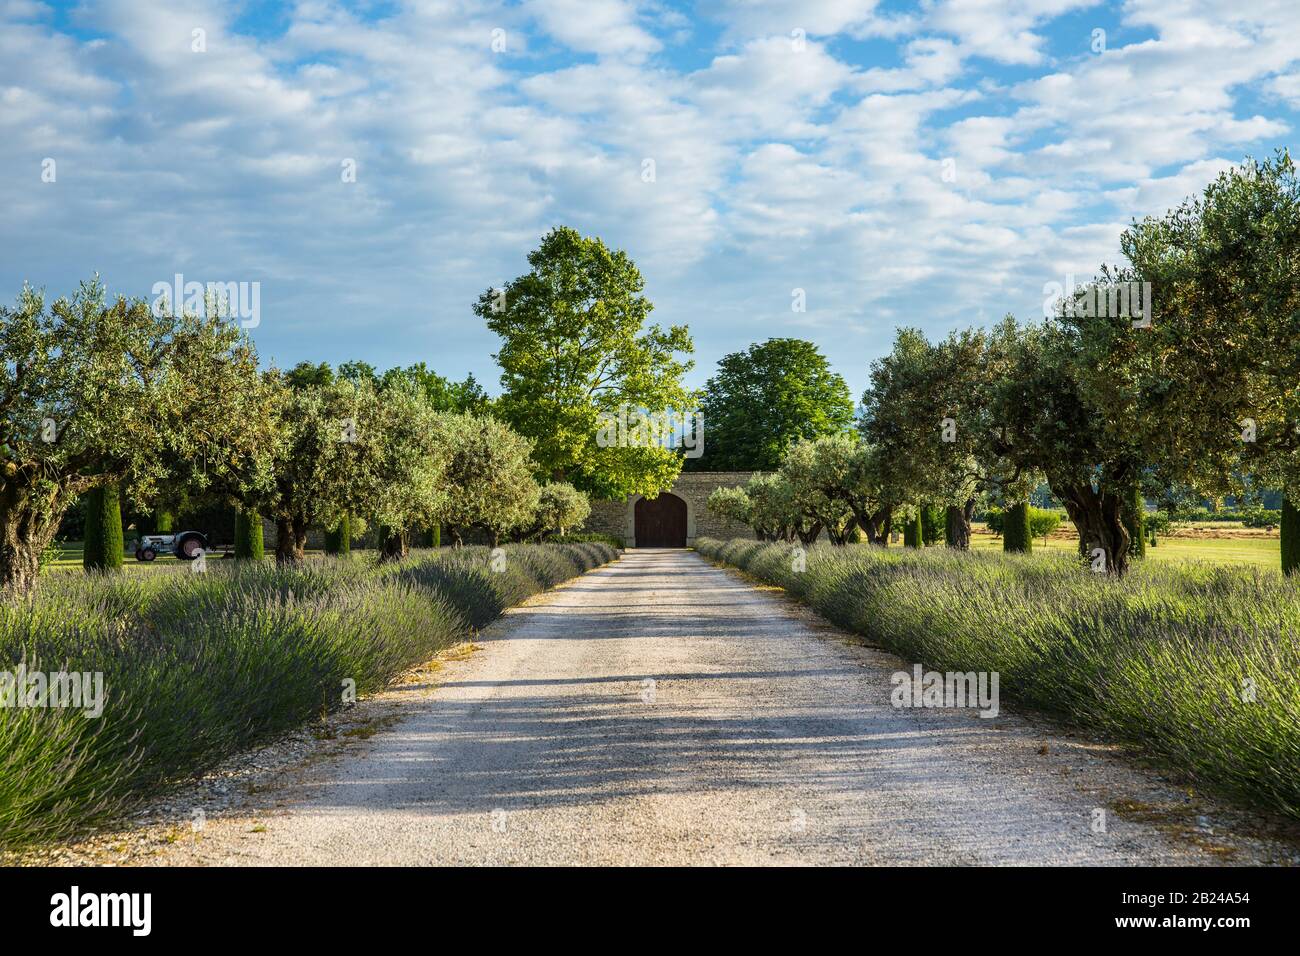 Cave de vinification en Provence. Belle vue sur un paysage rural avec lavande et vieux oliviers près de Maubec, Provence, France Banque D'Images